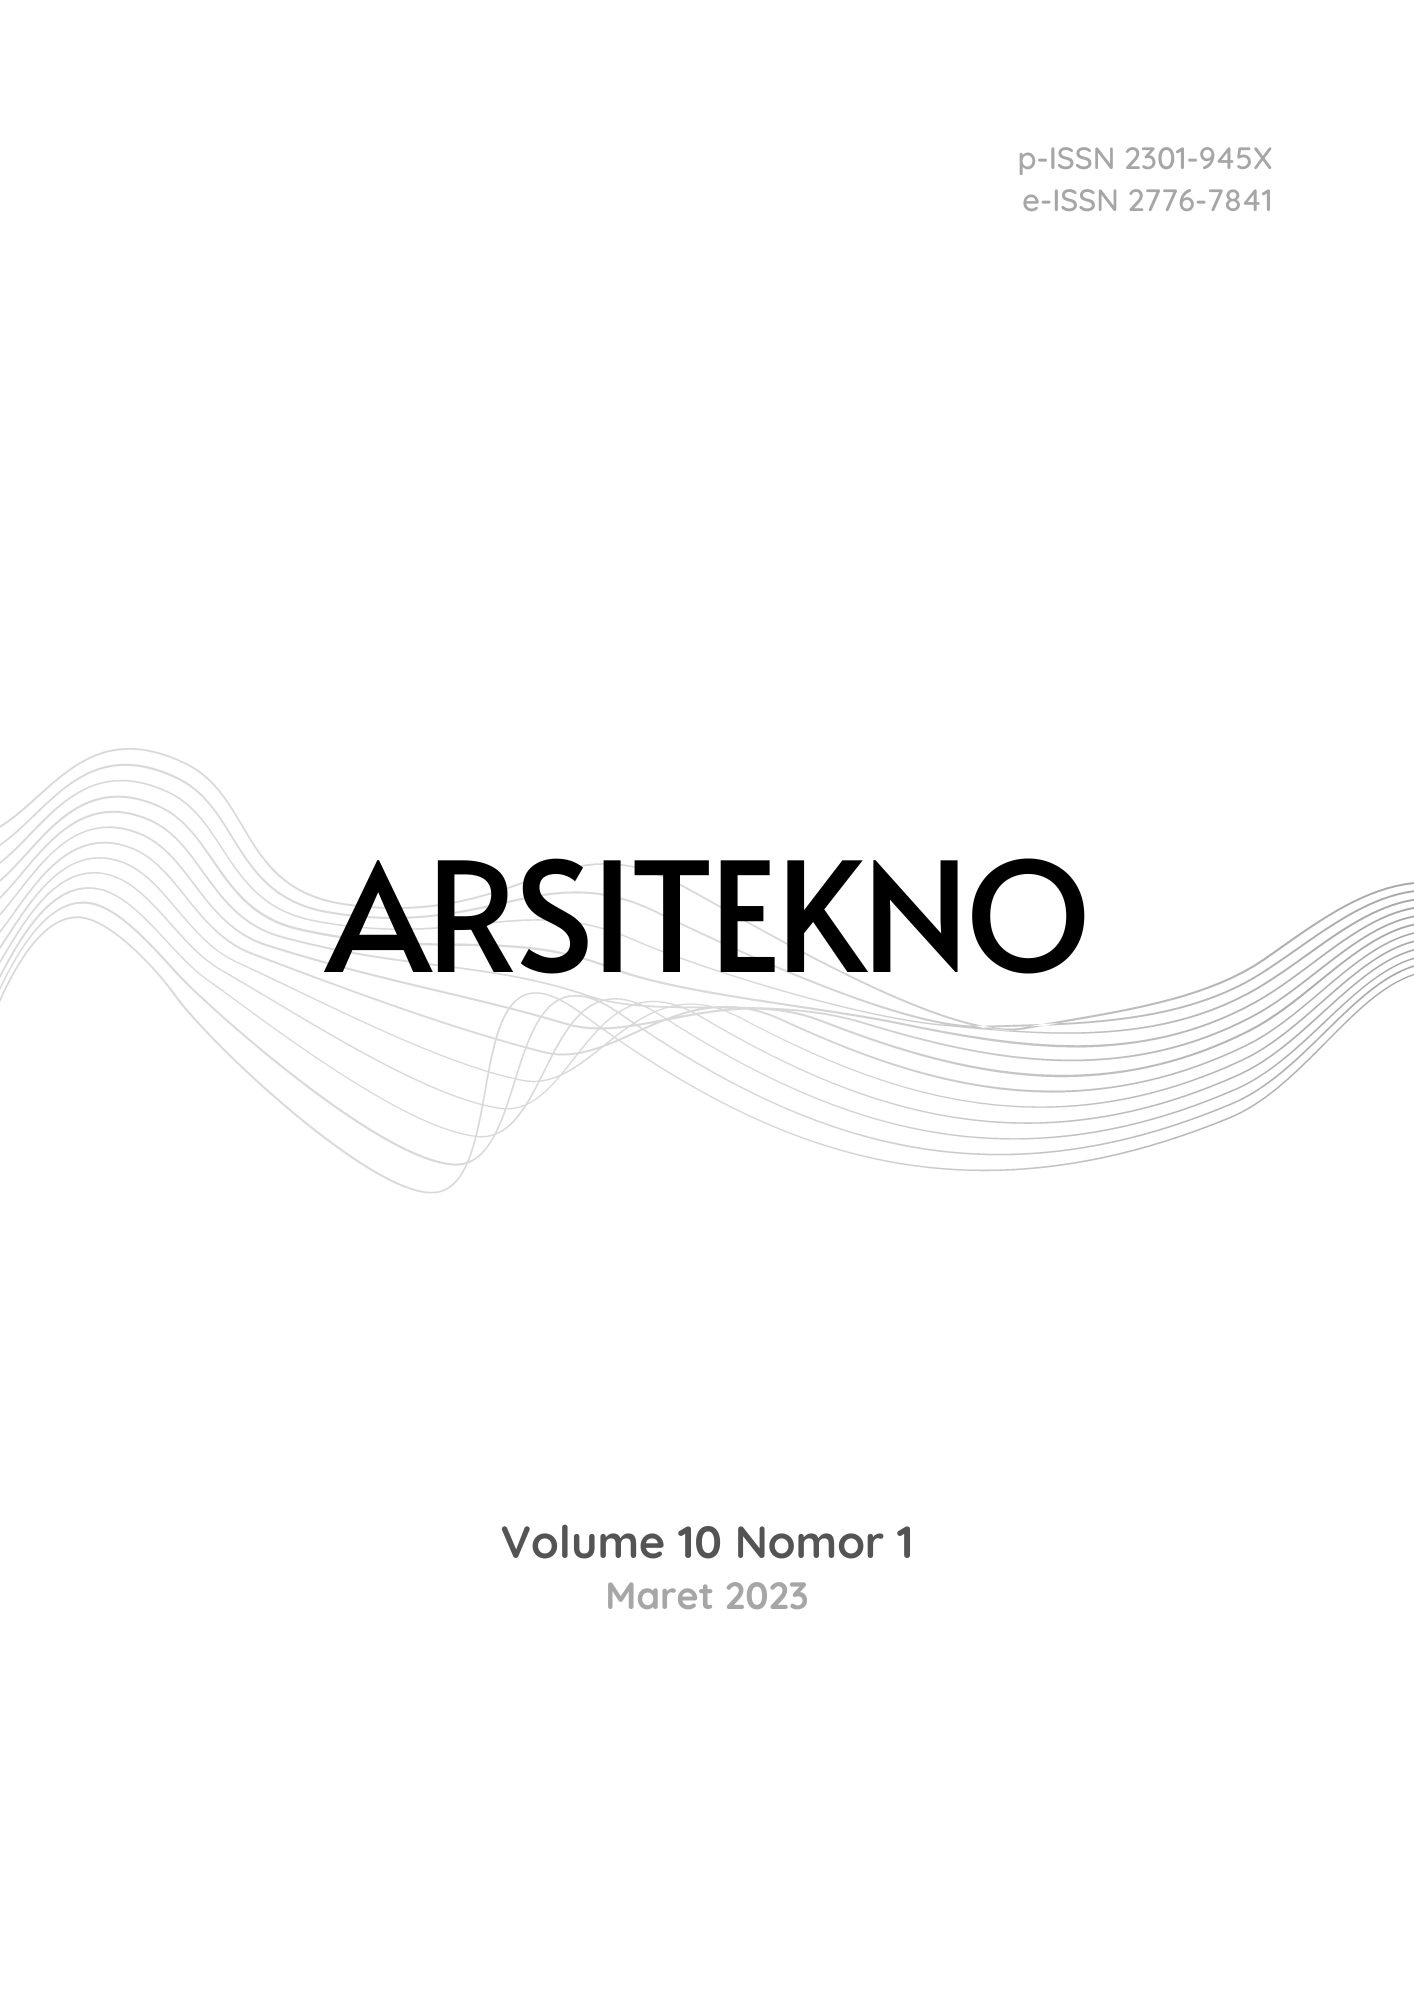 Arsitekno Vol 10 No 1